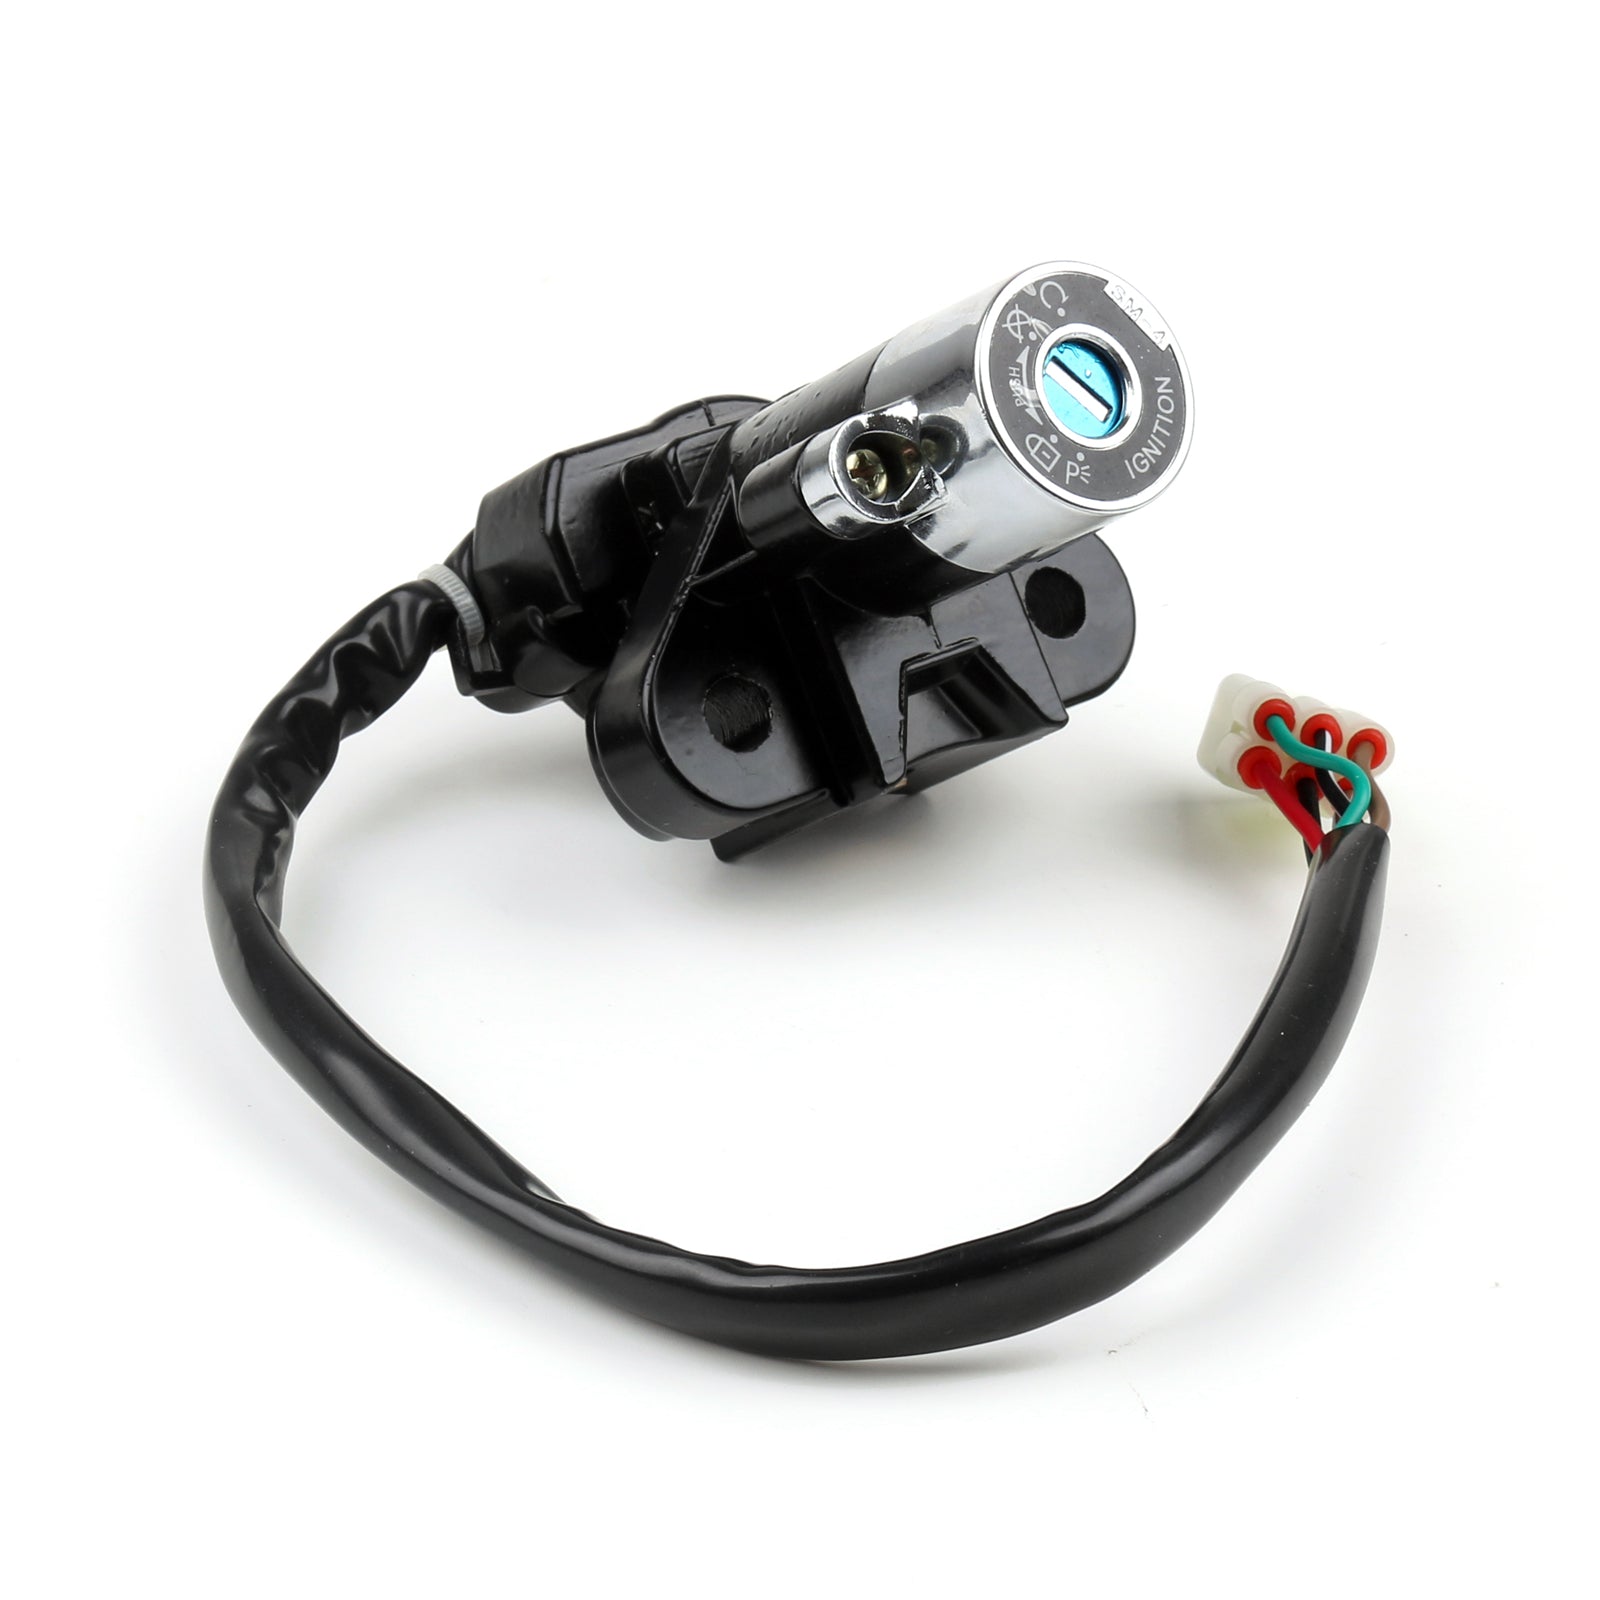 Ignition Switch Lock & Fuel Gas Cap Key Set For Suzuki GZ125 98-3 GZ25 99-11